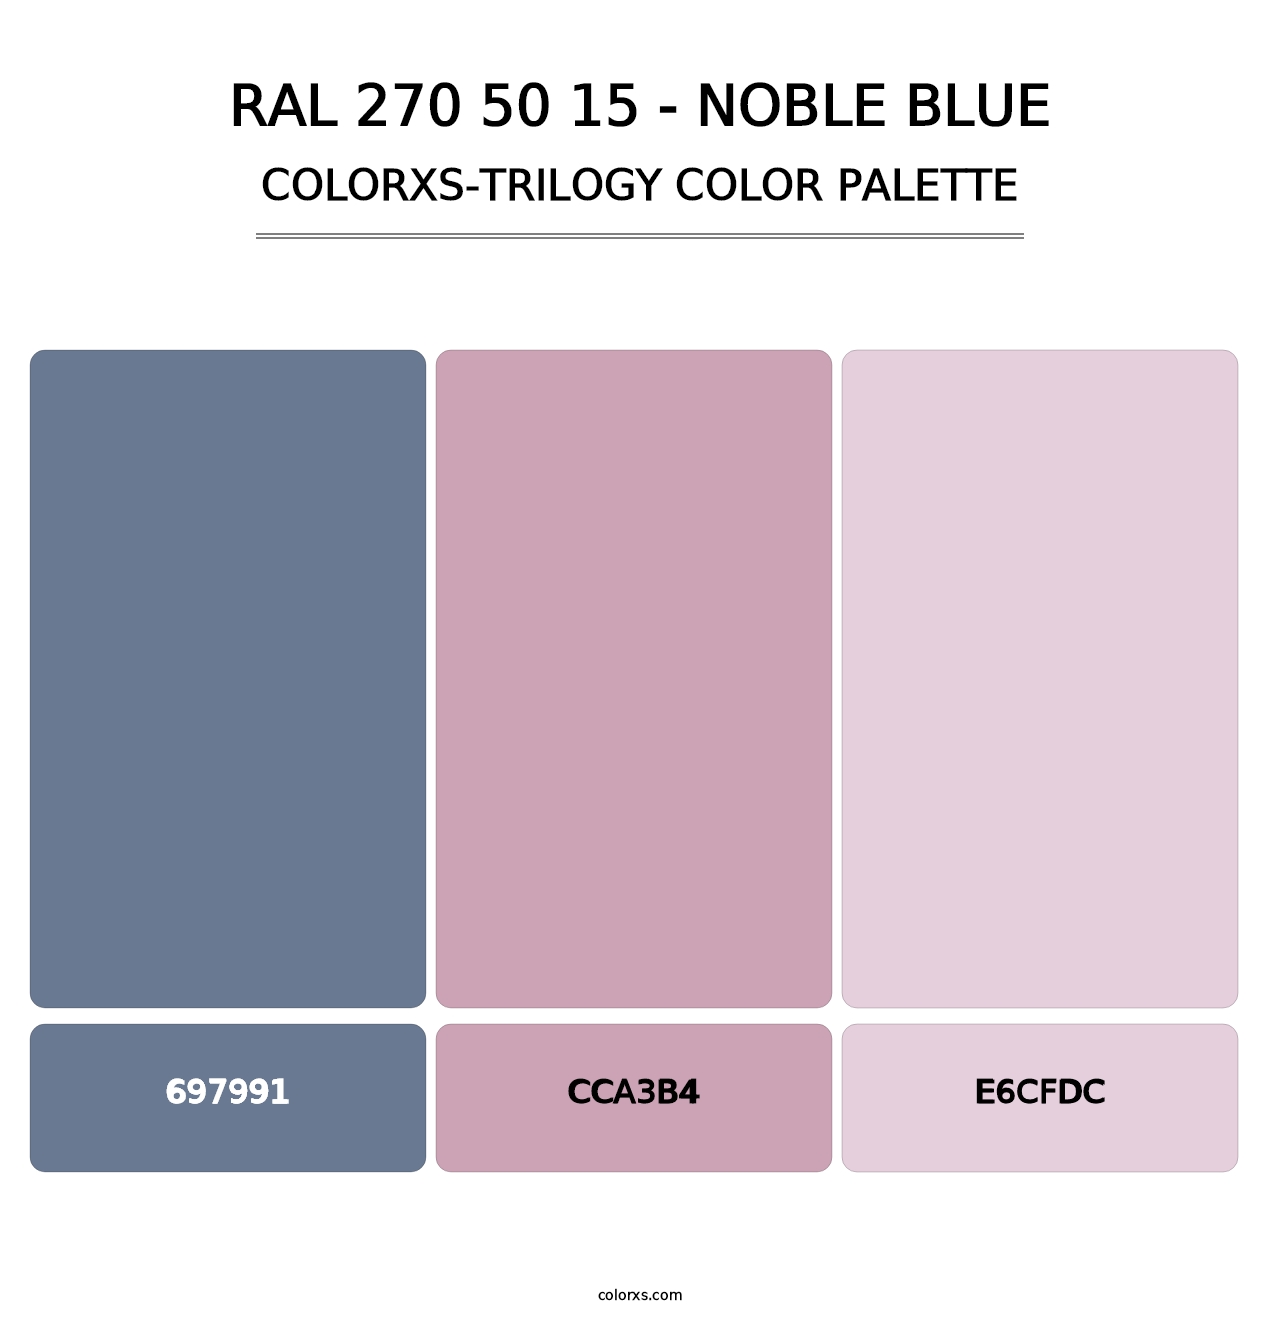 RAL 270 50 15 - Noble Blue - Colorxs Trilogy Palette